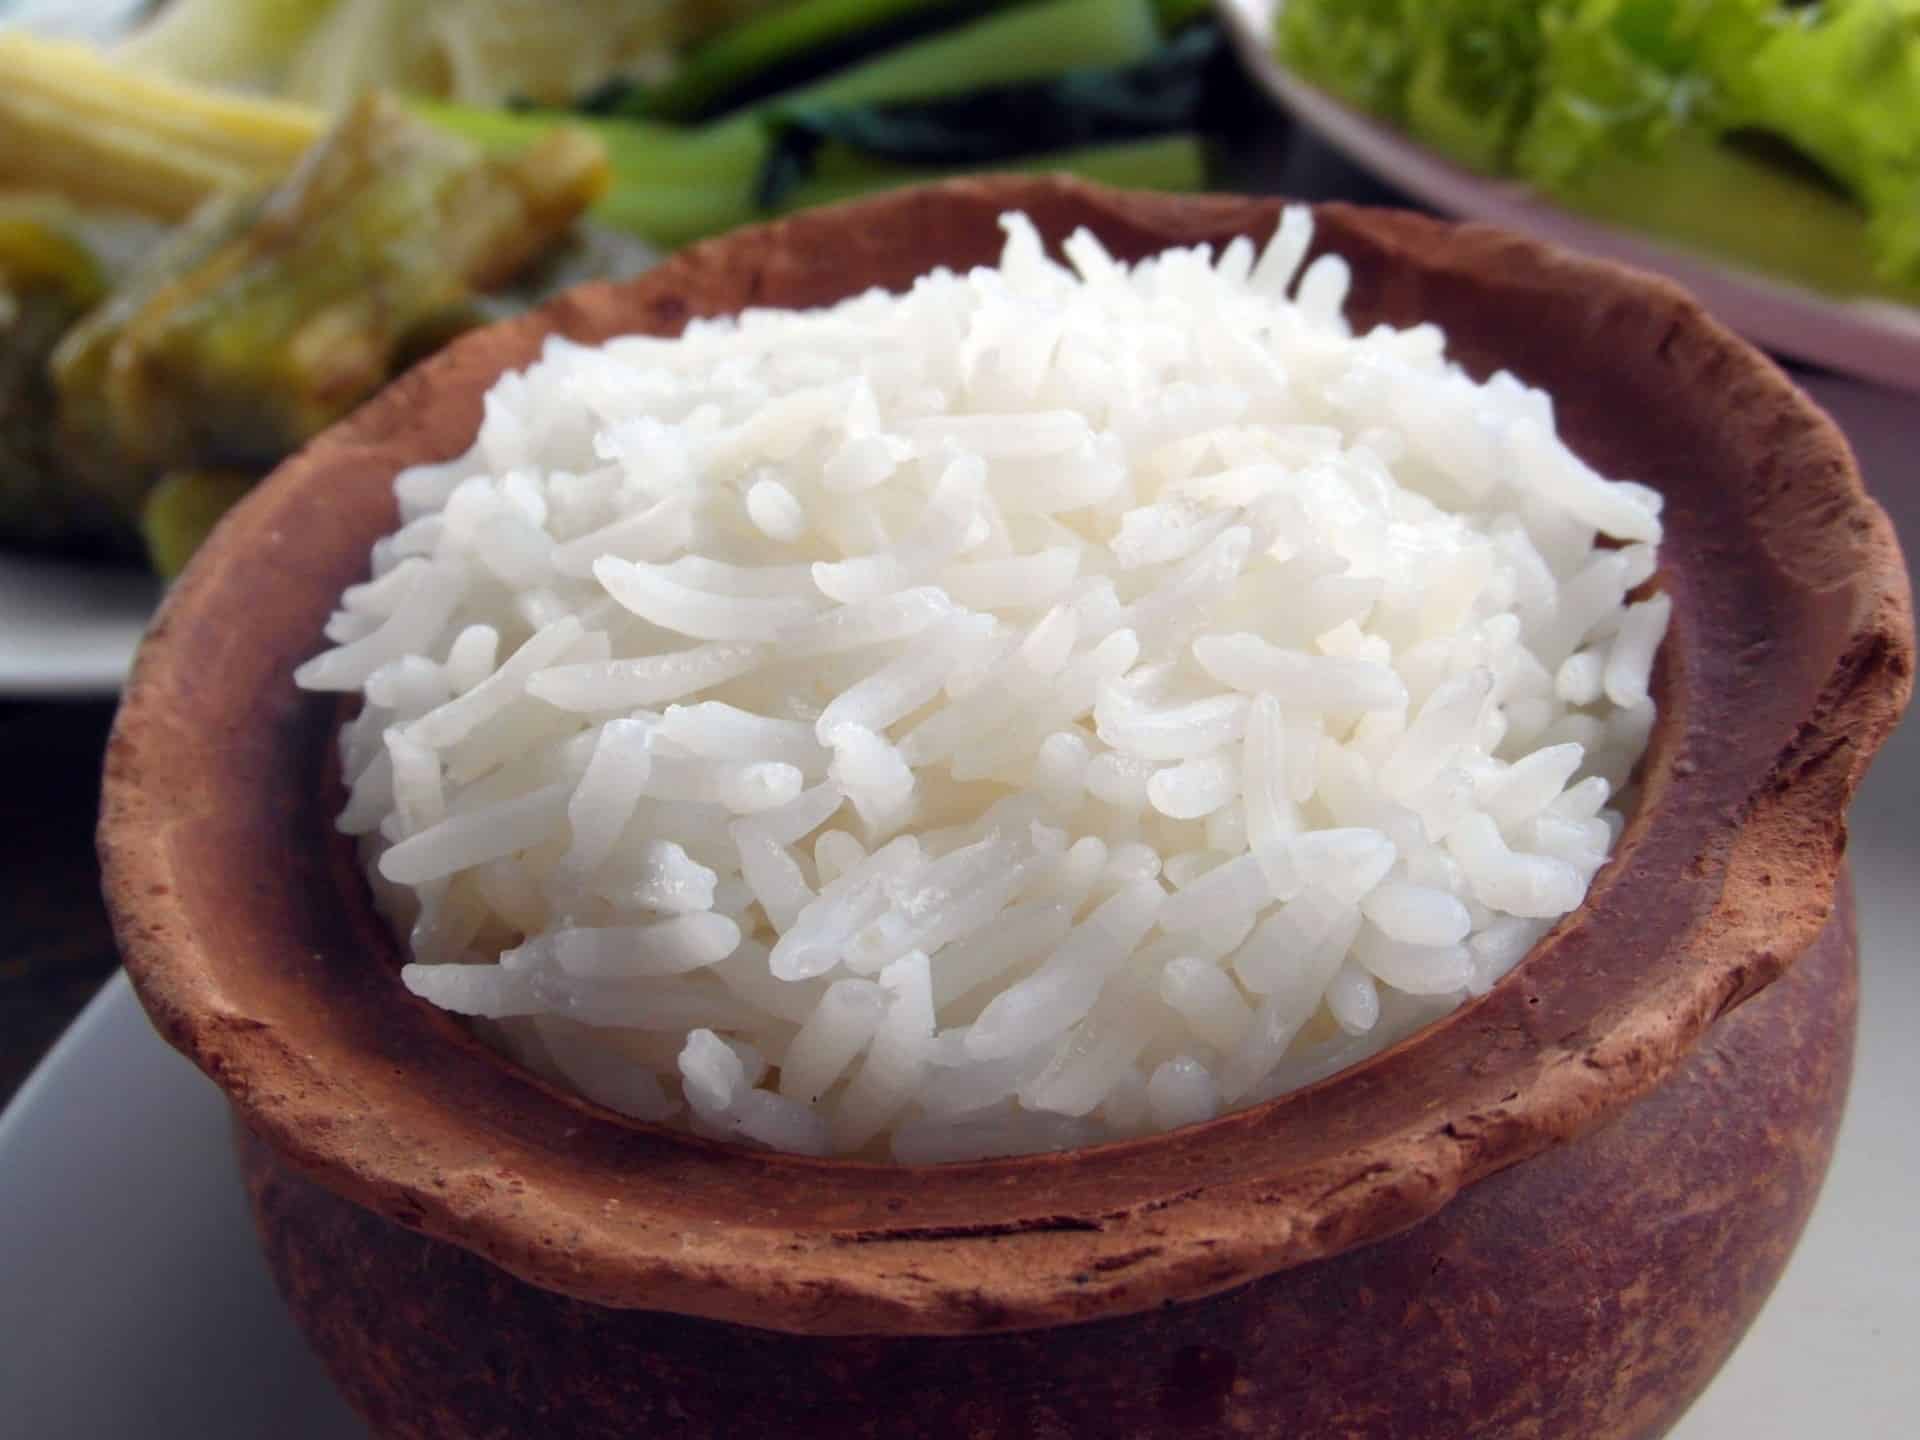 Basmati Rice Recipe  How To Cook Basmati Rice